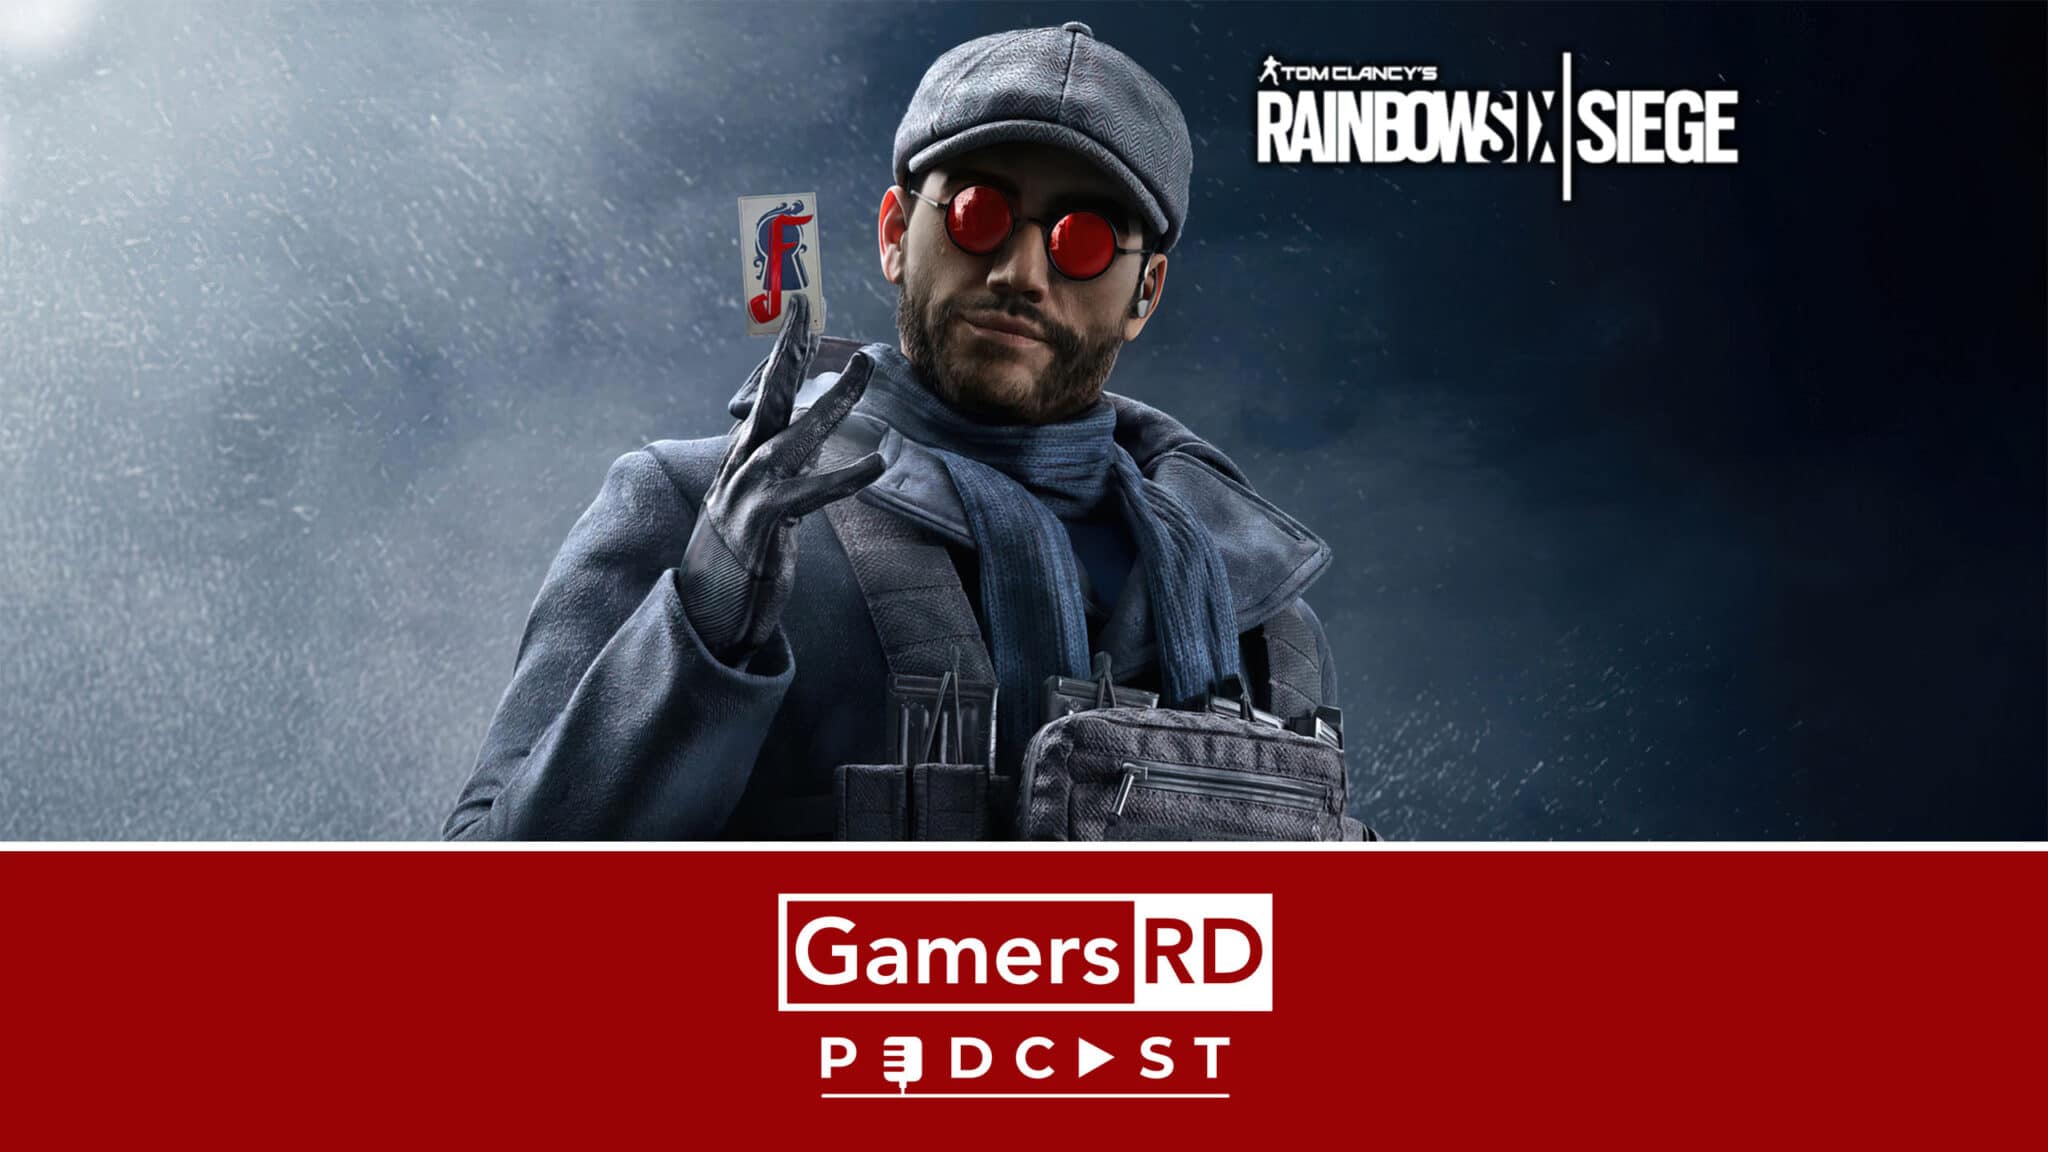 GamersRD Podcast #146 Año 6 de Tom Clancy's Rainbow 6 Siege. Nuevo operador, cambios al META, novedades expectativas